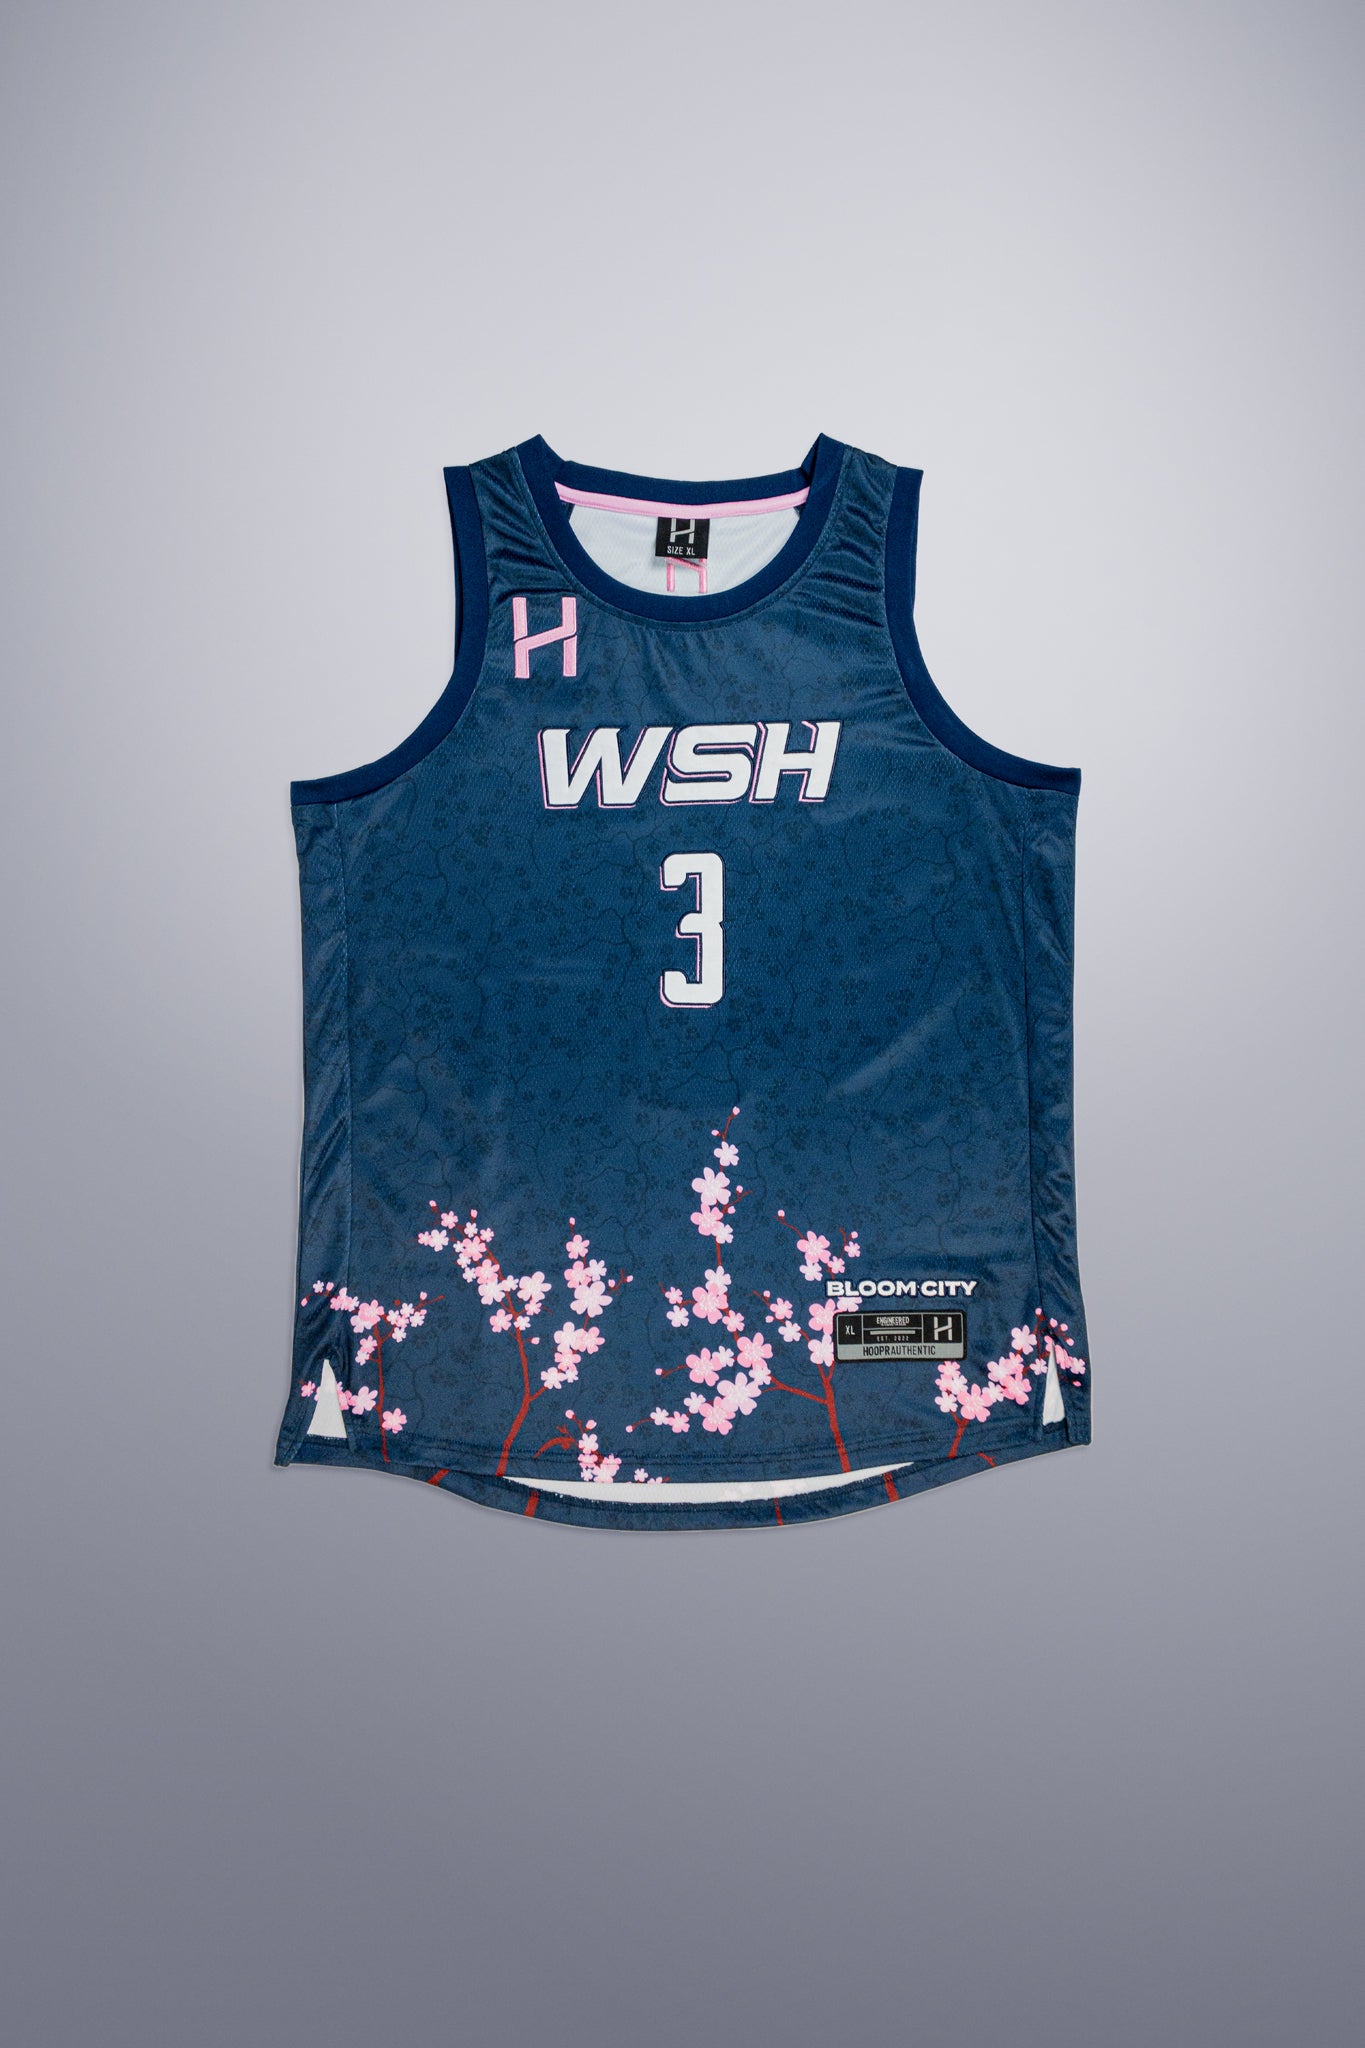 NBA2K Washington Wizards 'Bloom City' Custom Jerseys by @hooprstore 